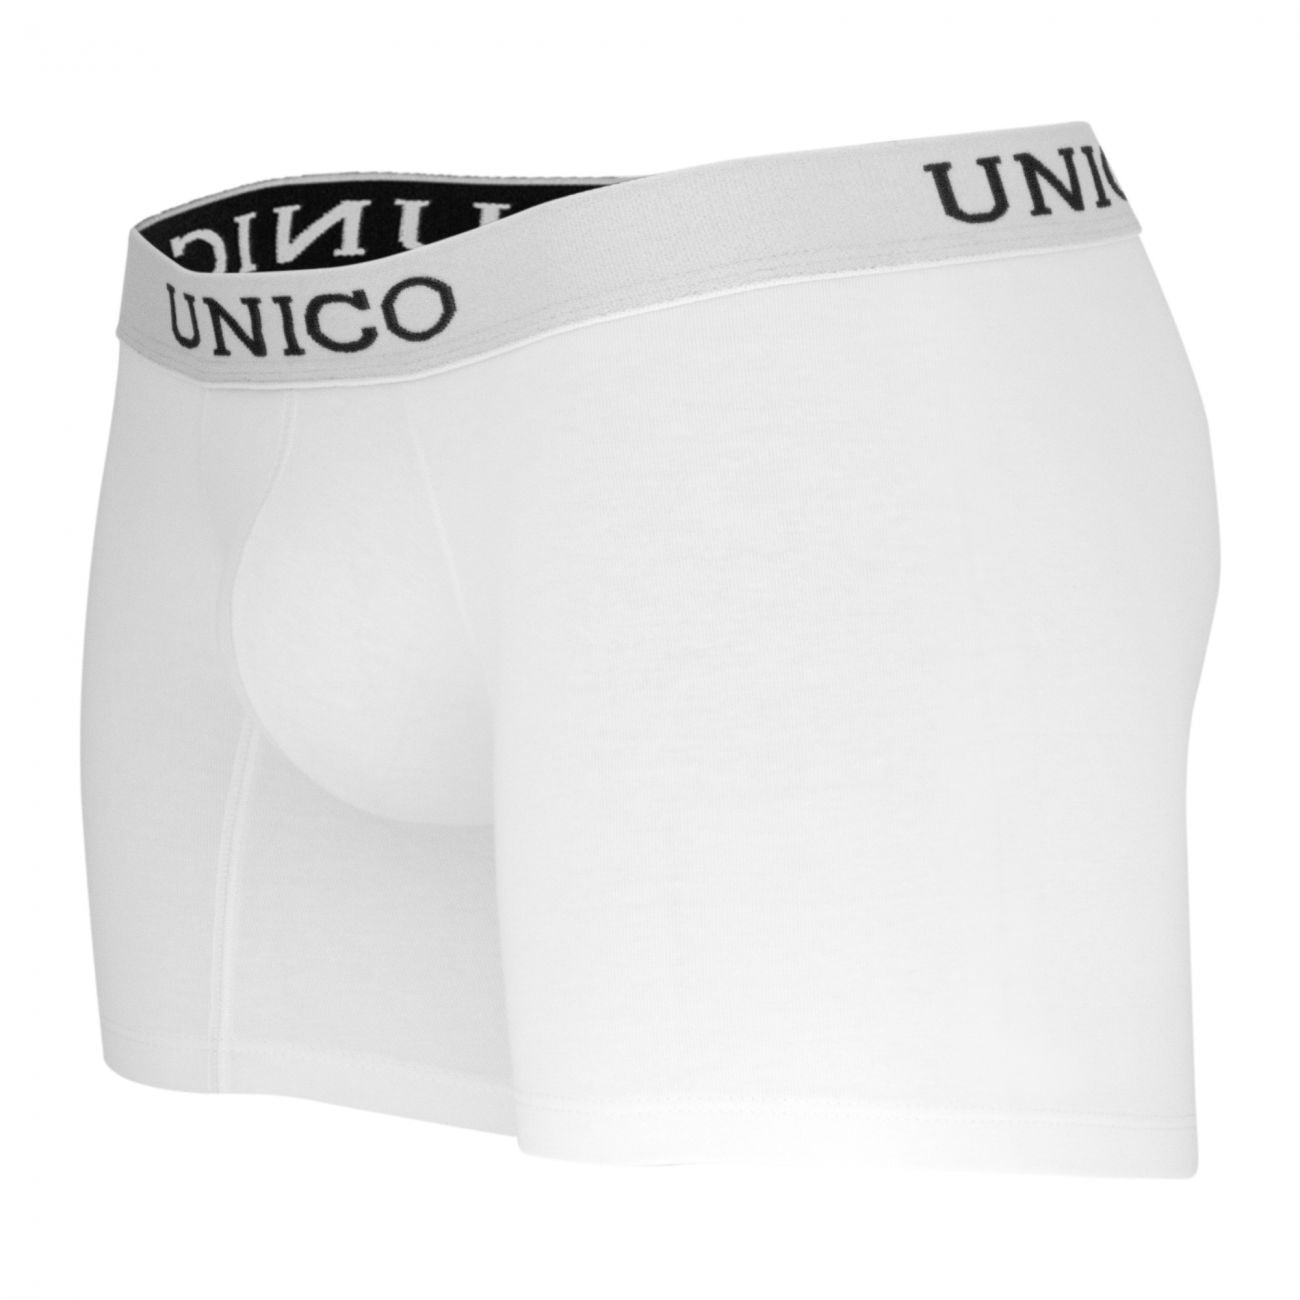 Unico (9612010020100) Boxer Briefs Cristalino Cotton